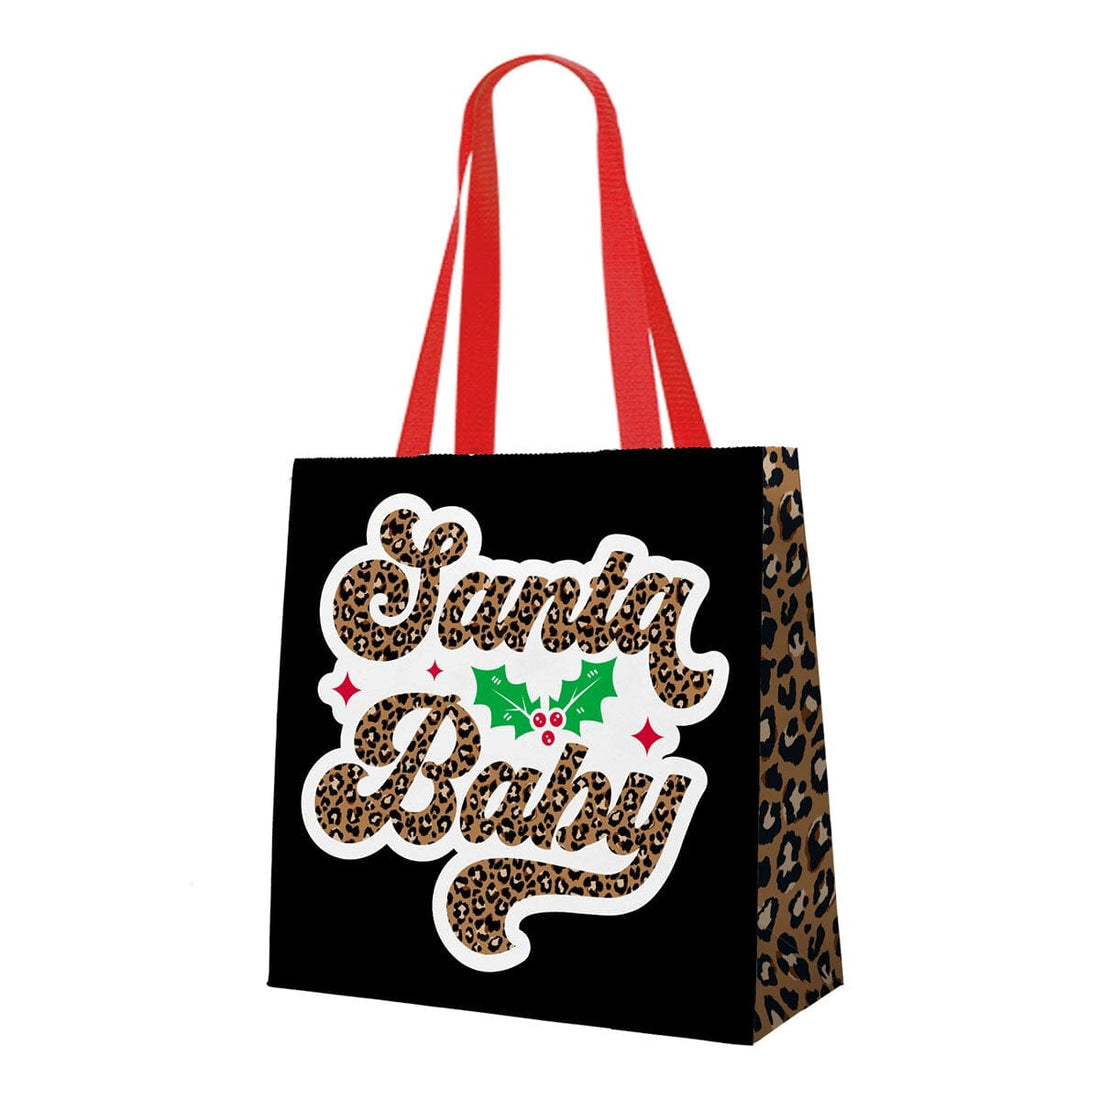 Santa Baby Gift Bag